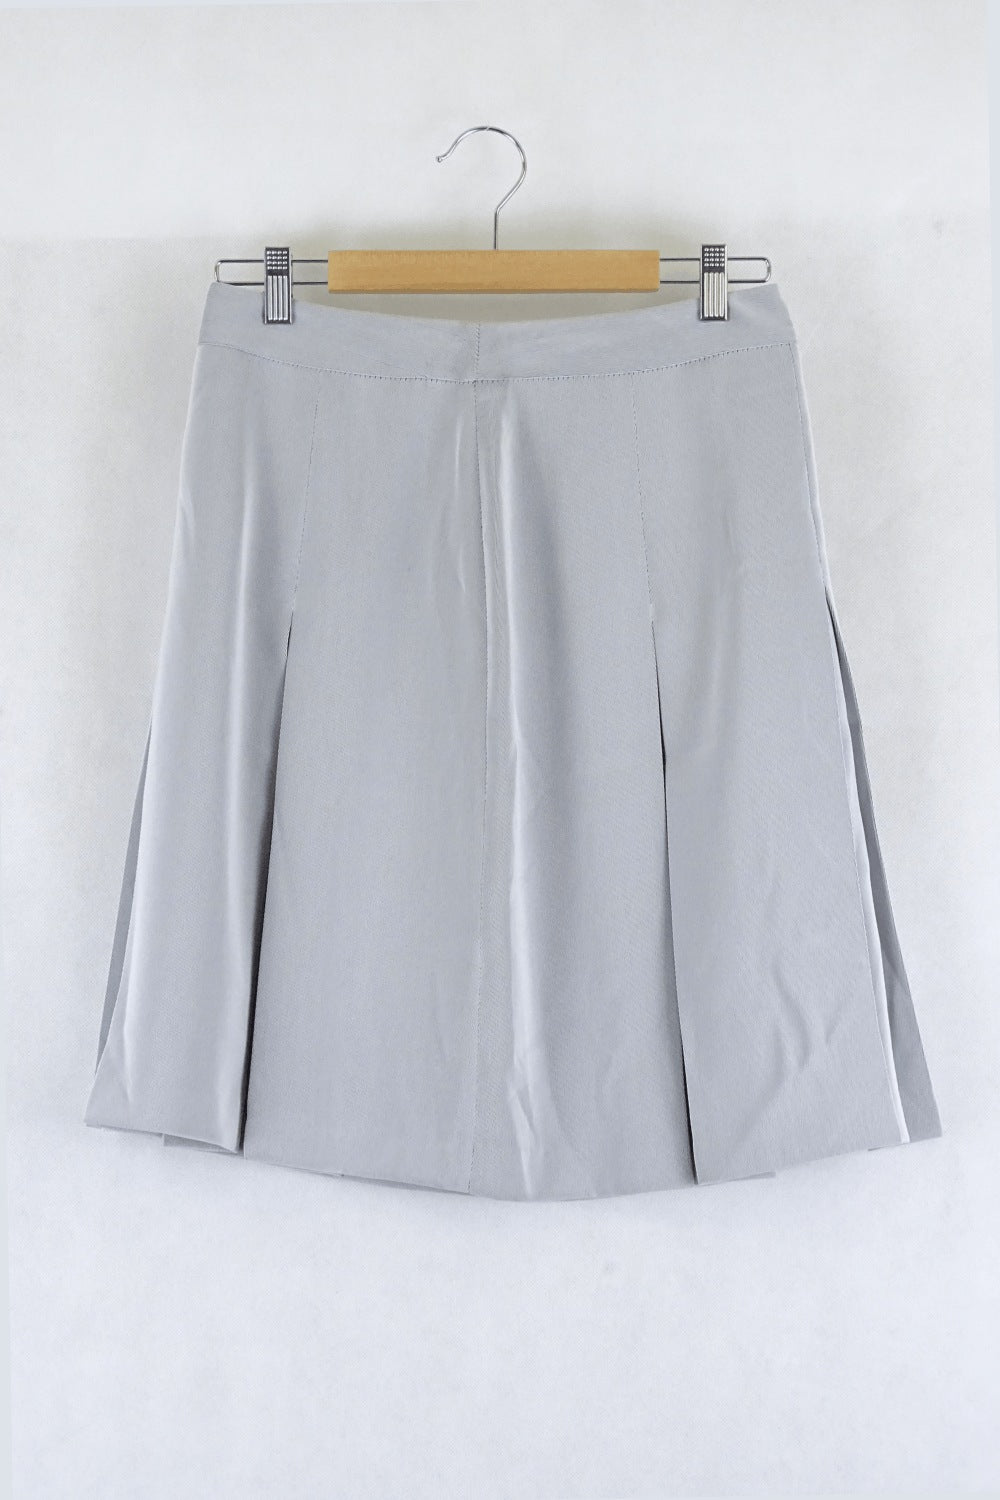 Giallo Italy Grey Skirt 44 (Au 12)